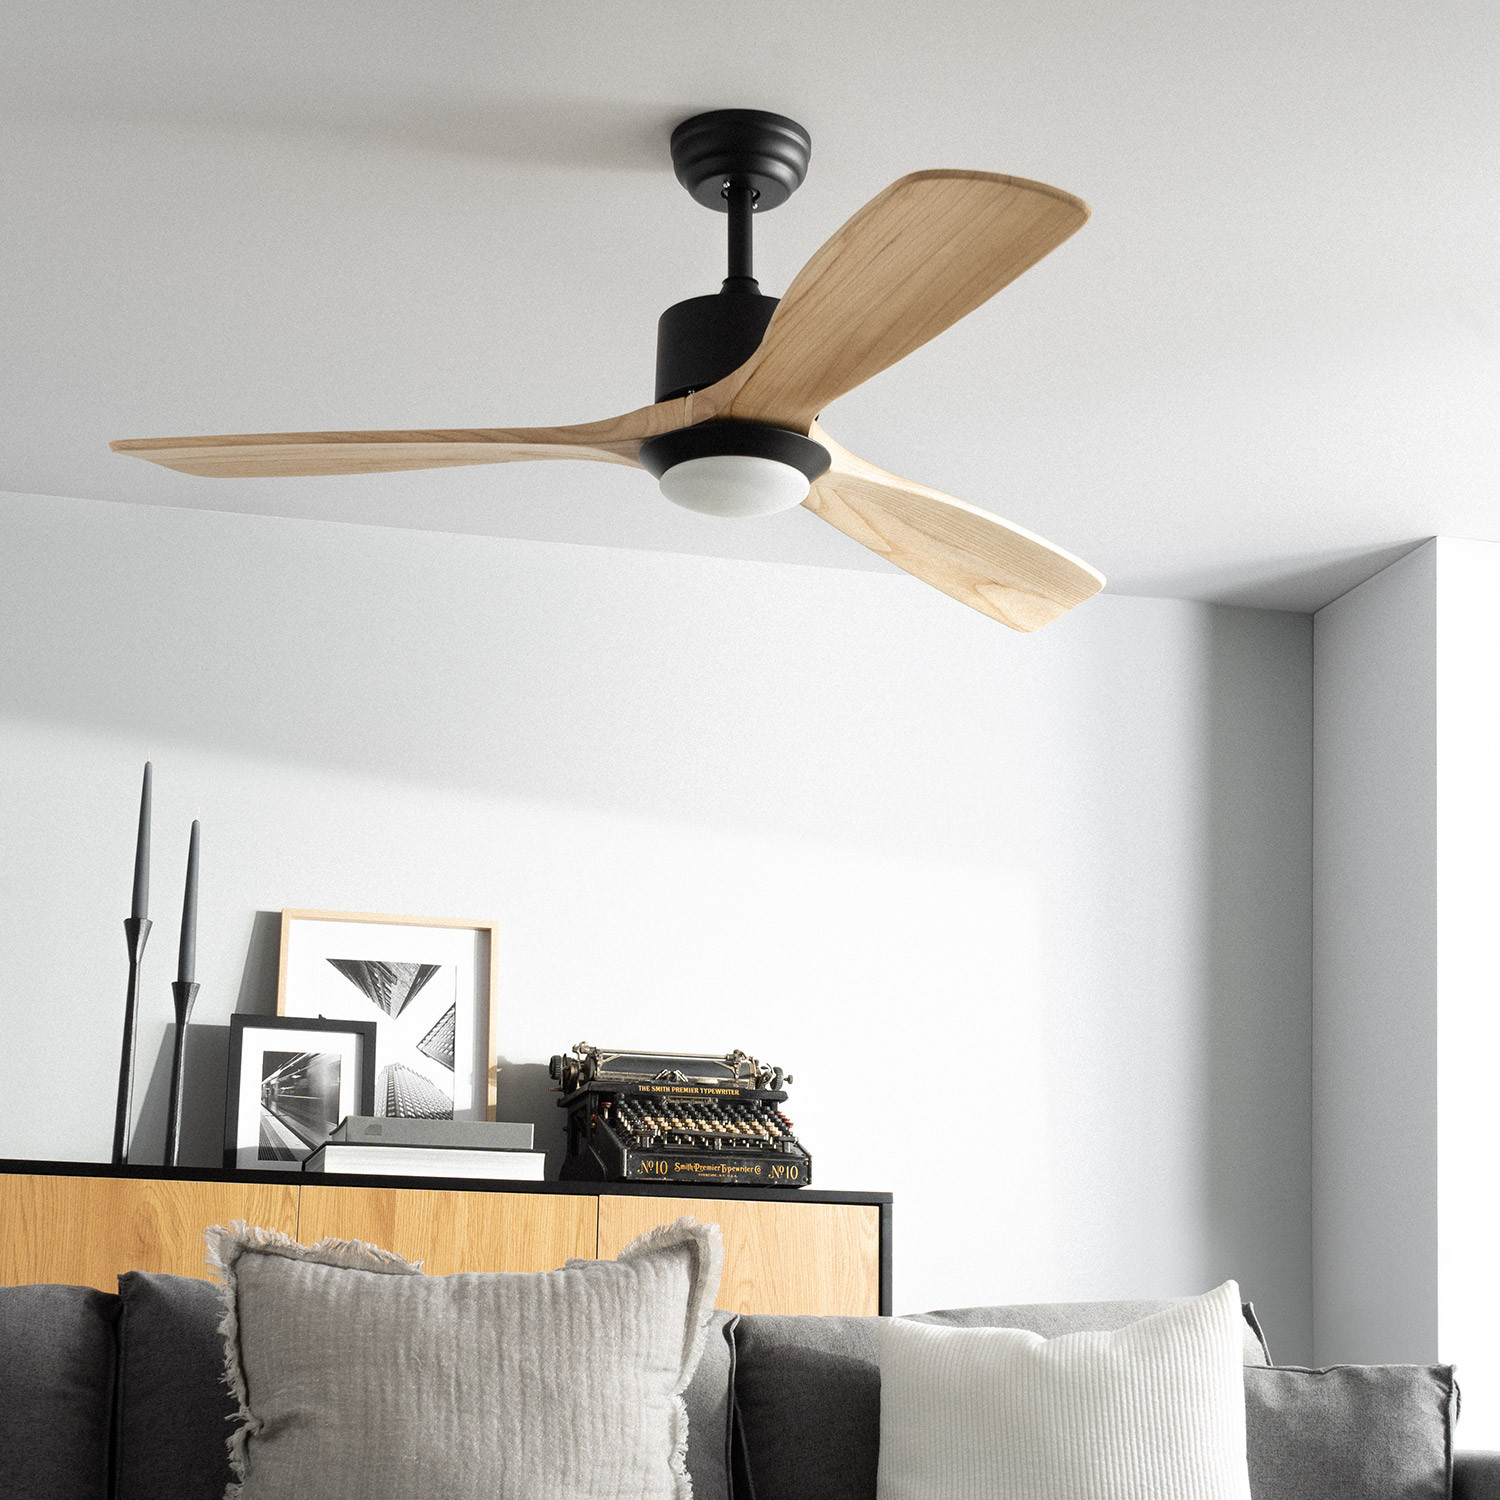 ontwikkeling bijstand Feest Ventilator plafond Aurelio met verlichting en afstandsbediening AC – LED –  132cm– licht hout kleurig– plafondventilator | Klanten geven ons een 5/5 |  De Ventilatorenbaas.nl